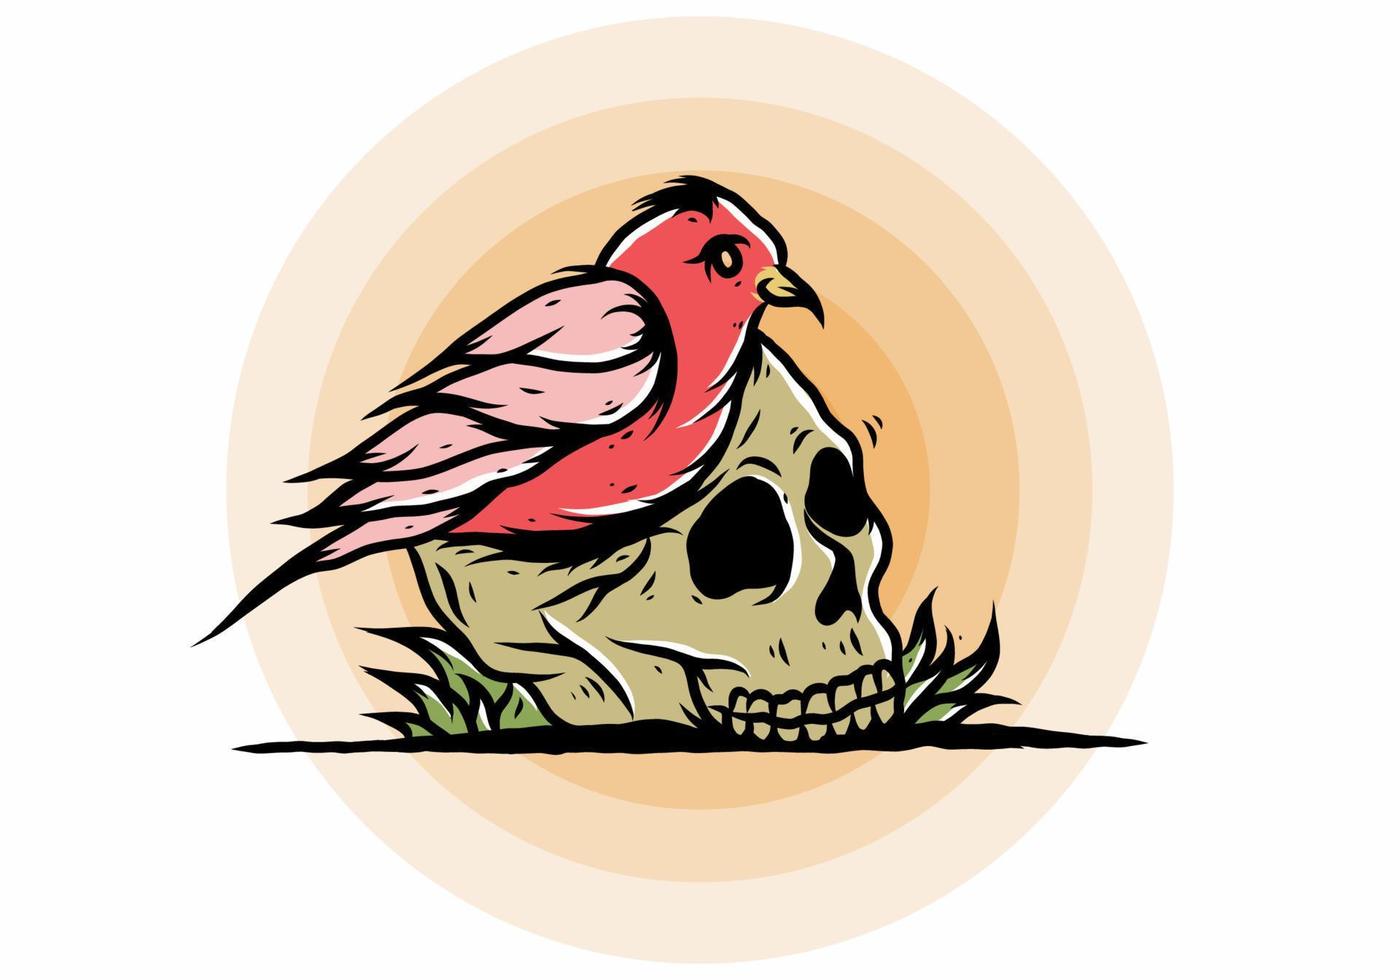 Bird nesting in skull illustration vector